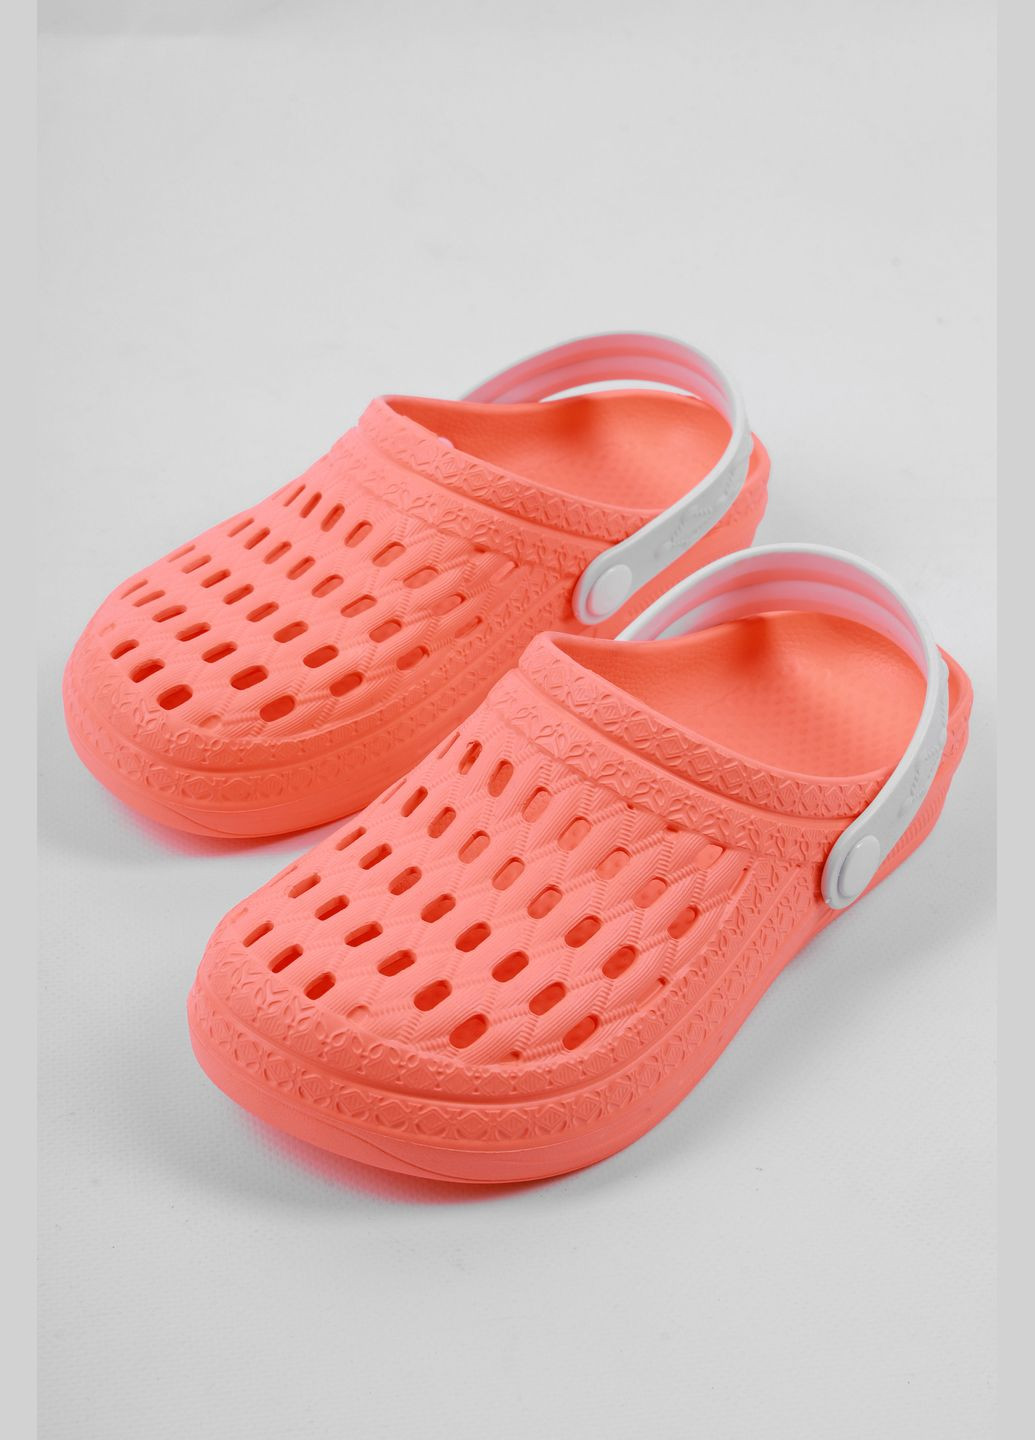 Крокси жіночі персикового кольору Let's Shop (293055846)